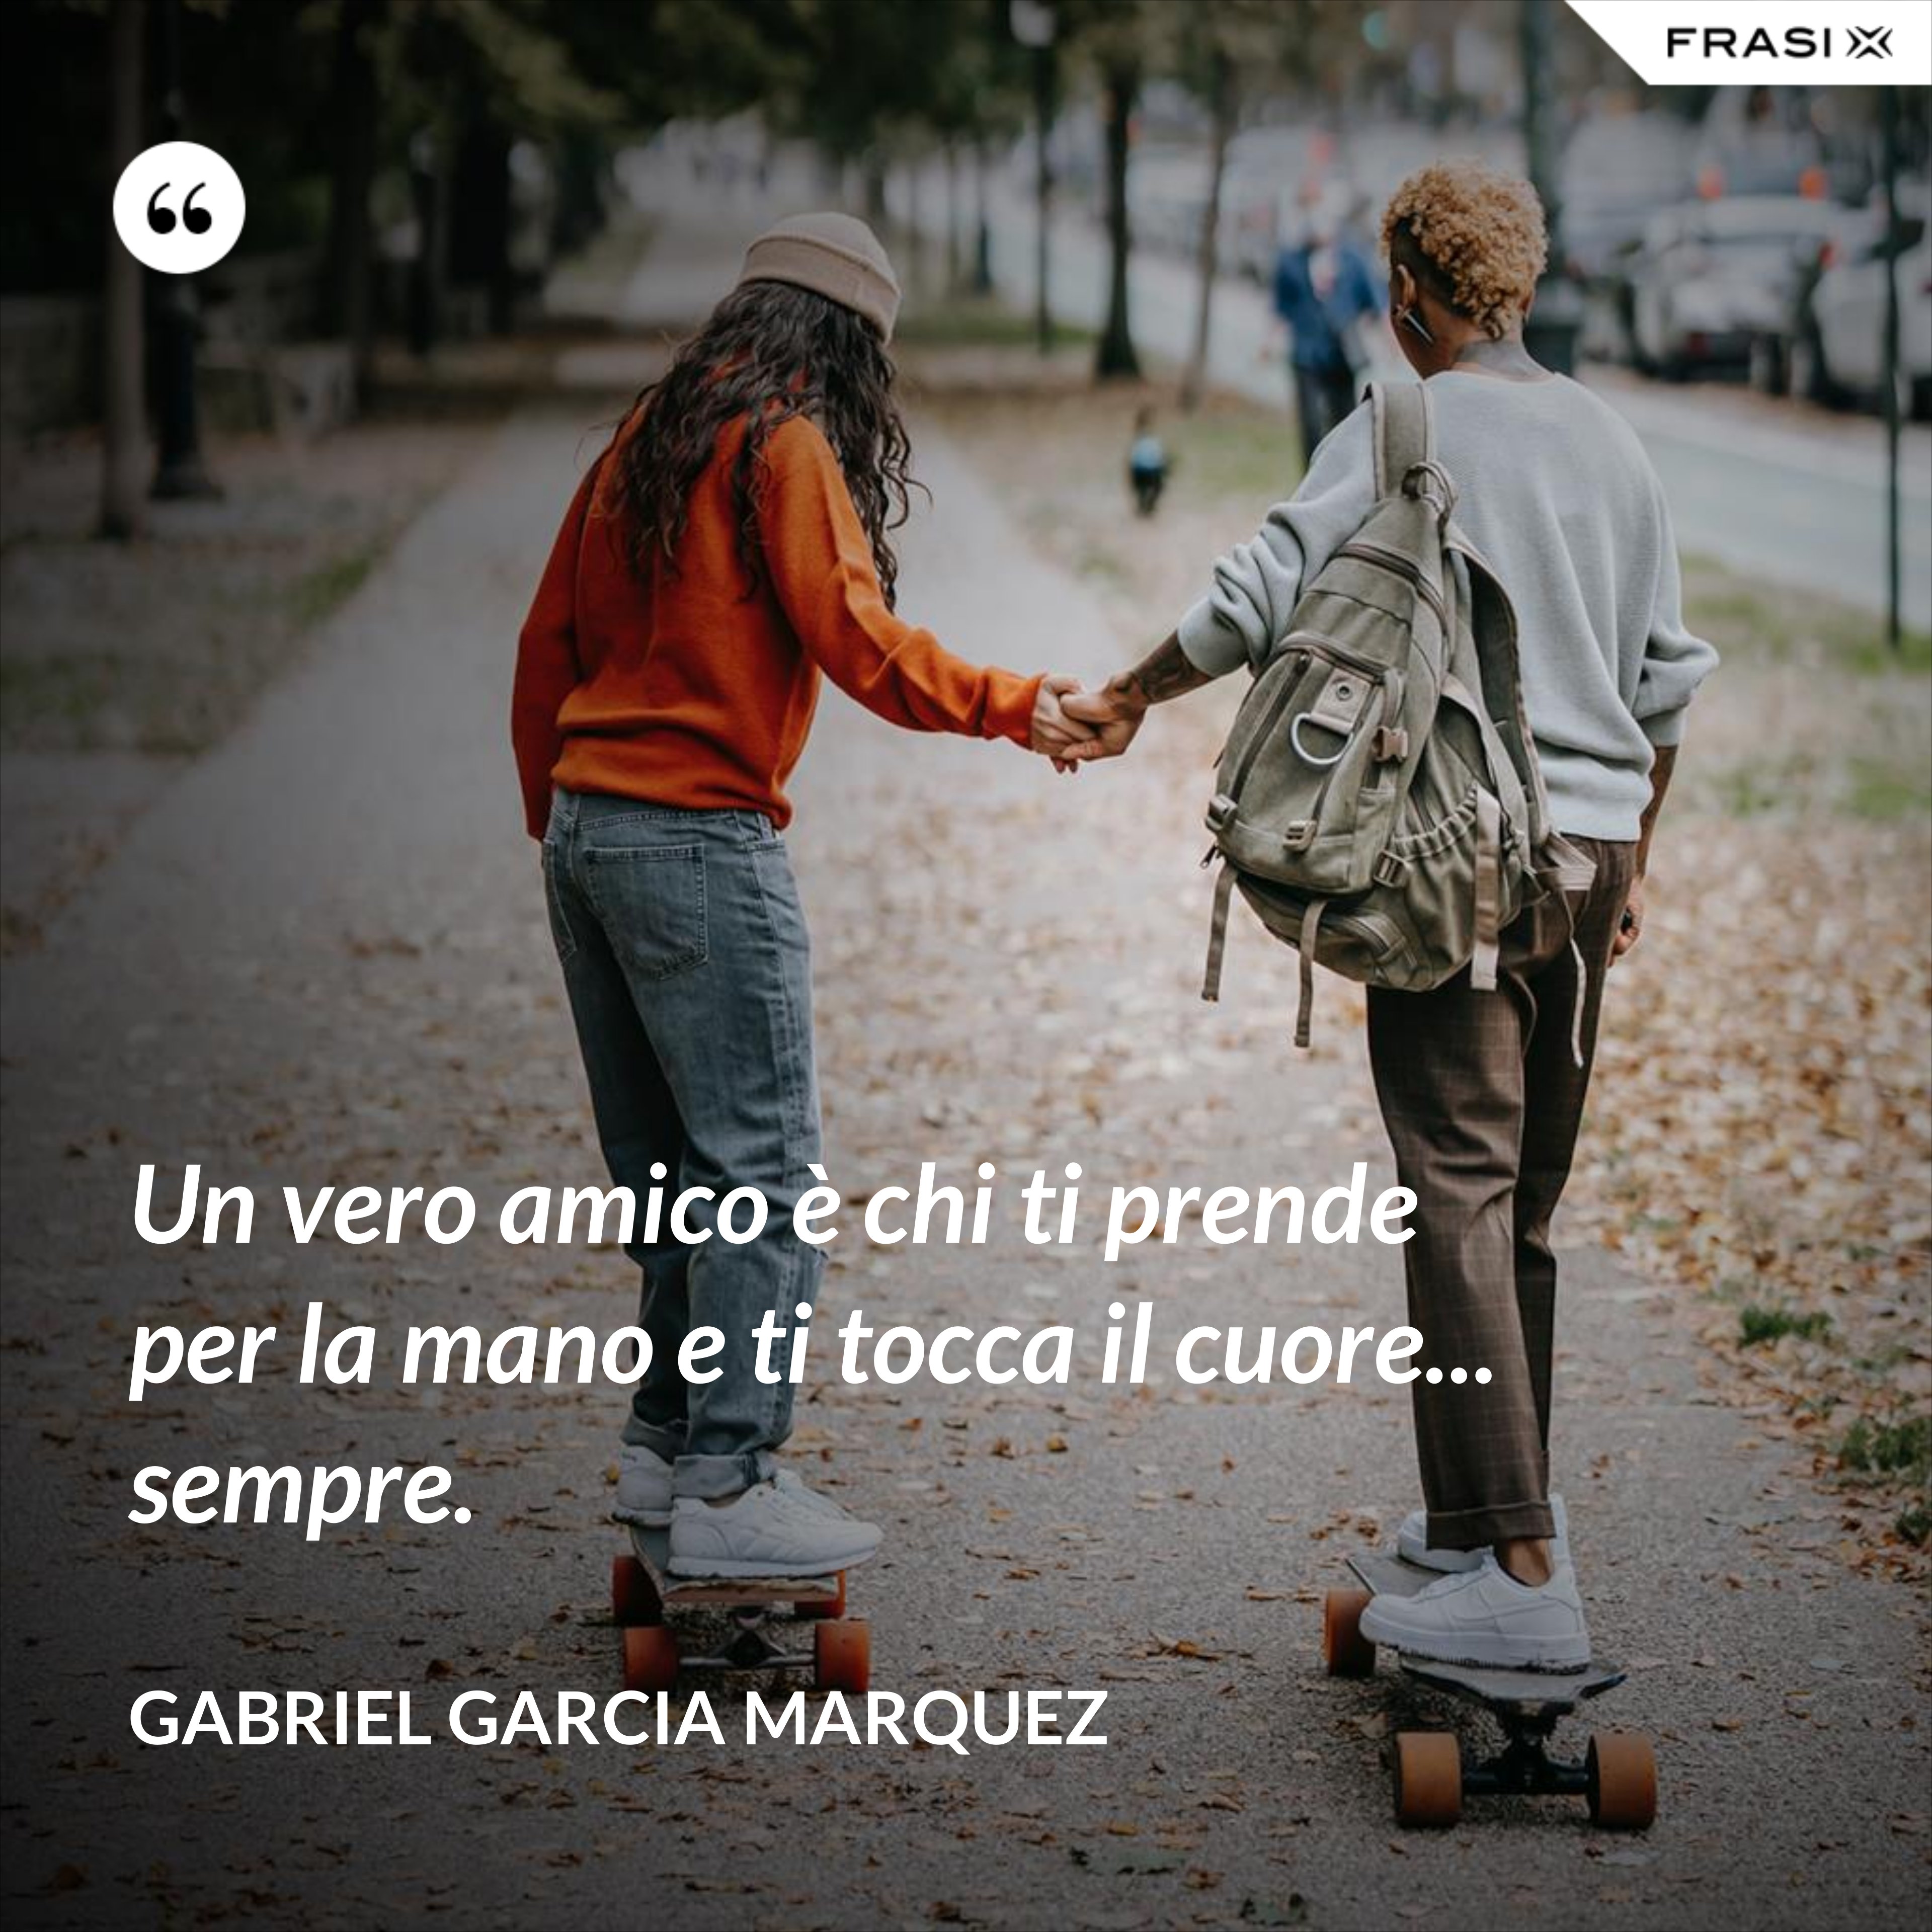 Un vero amico è chi ti prende per la mano e ti tocca il cuore... sempre. - Gabriel Garcia Marquez